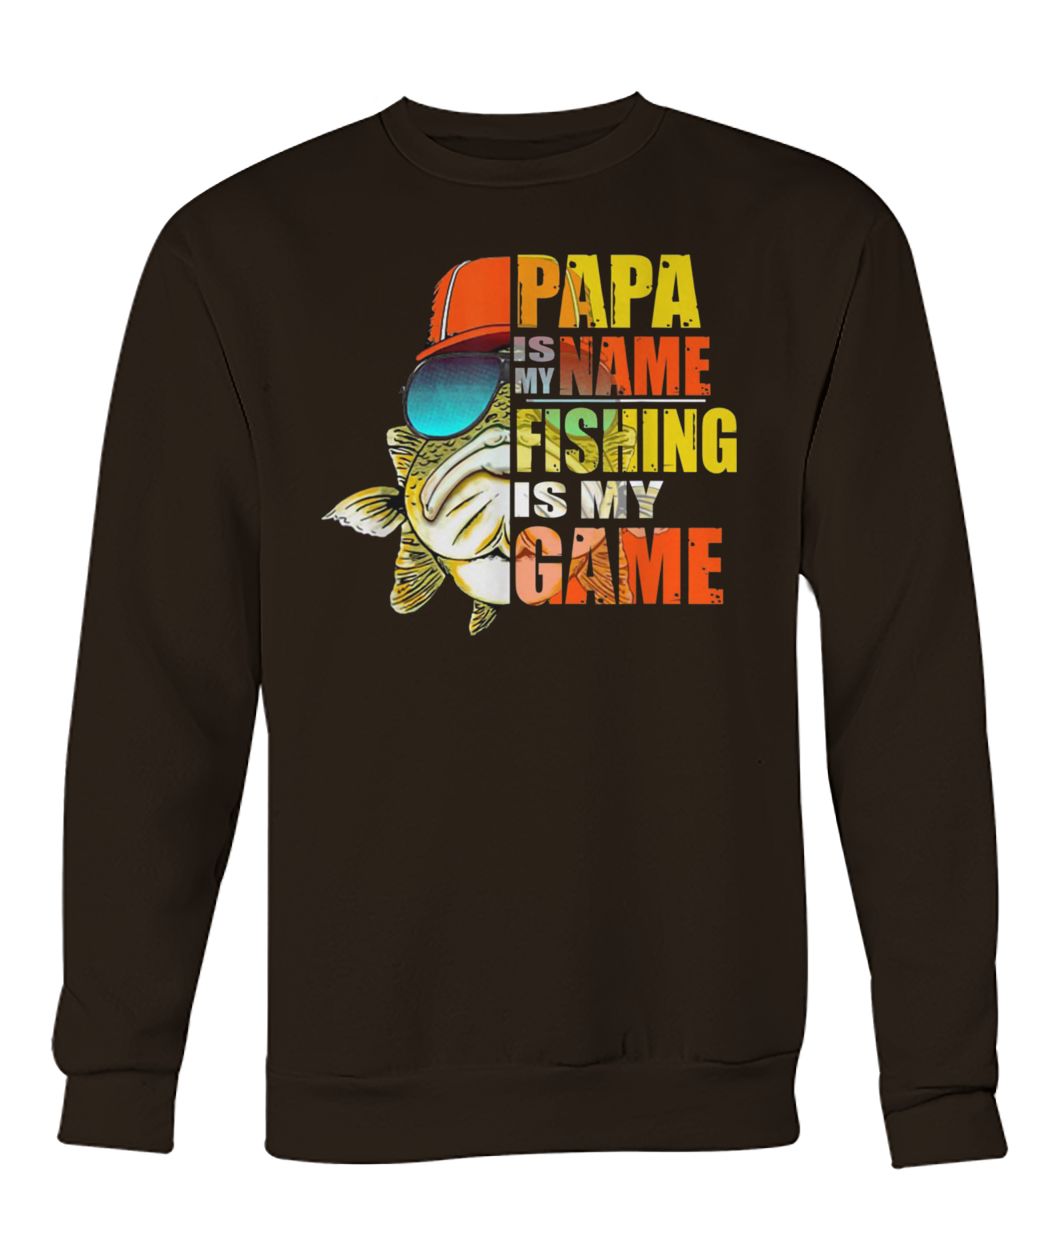 Papa is my name fishing is my game crew neck sweatshirt